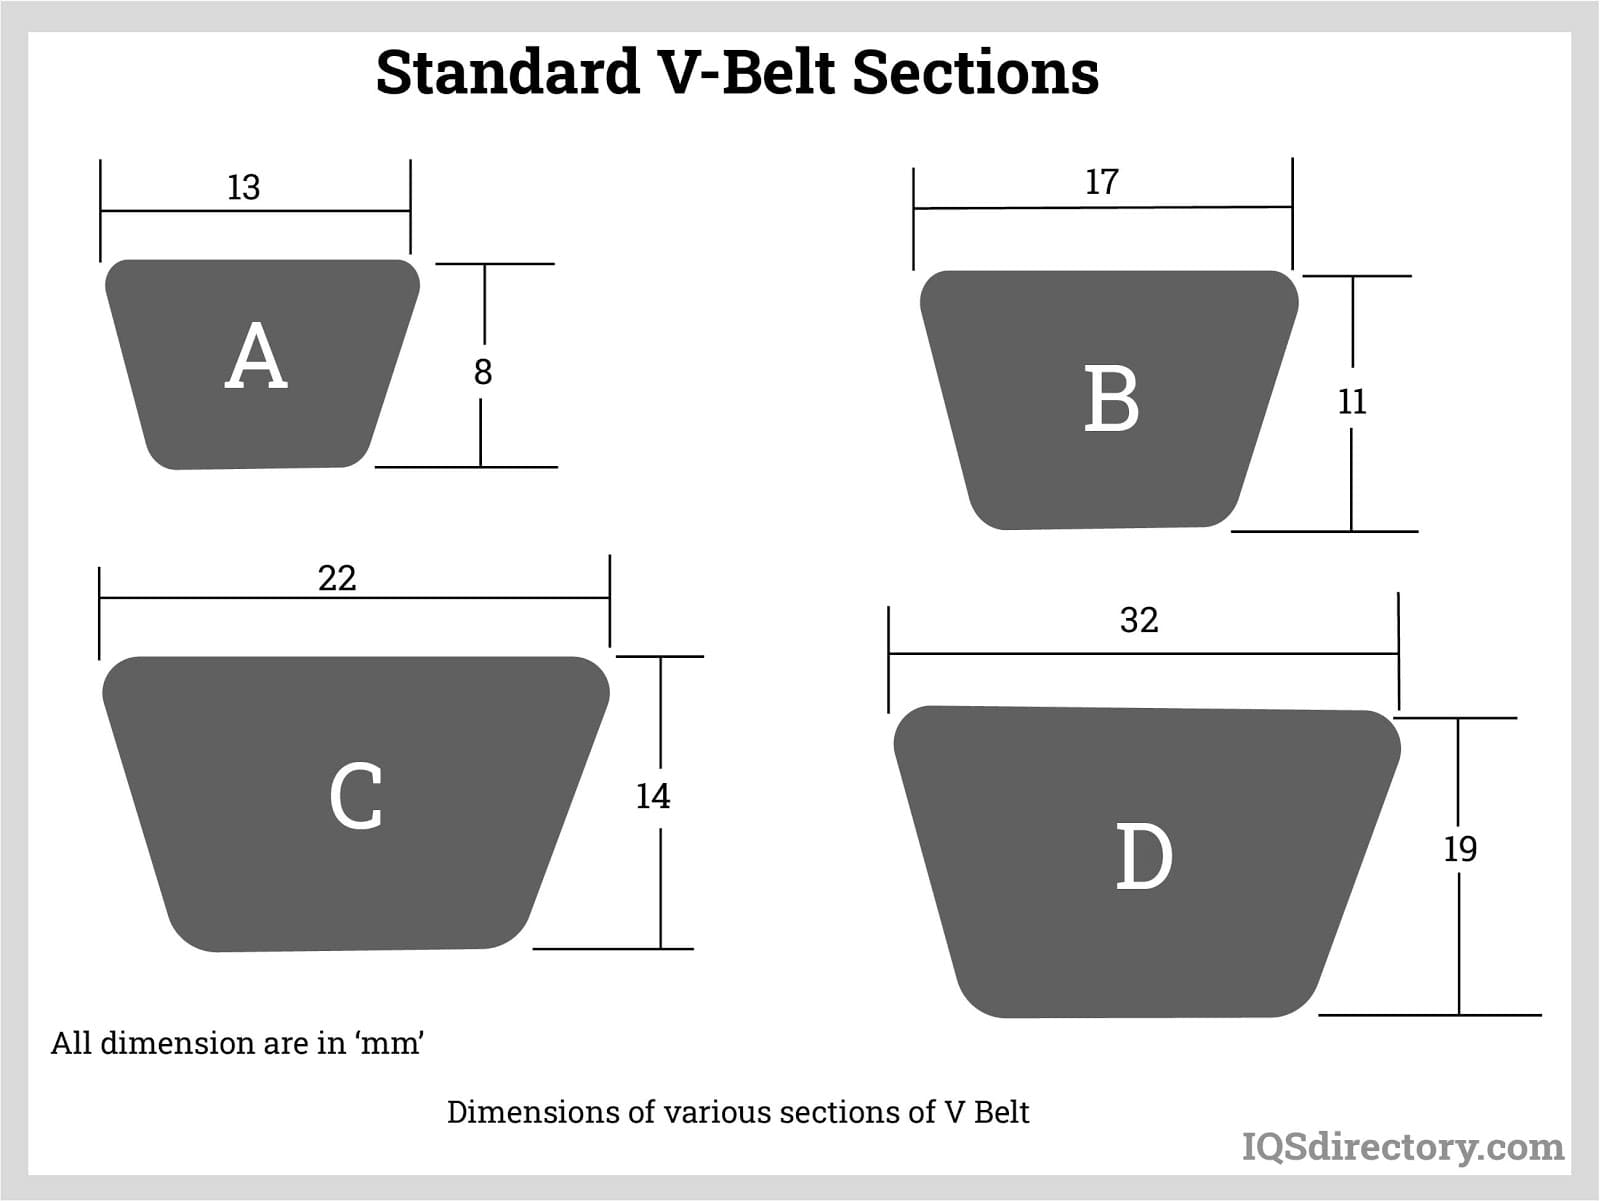 Standard V-Belt Sections